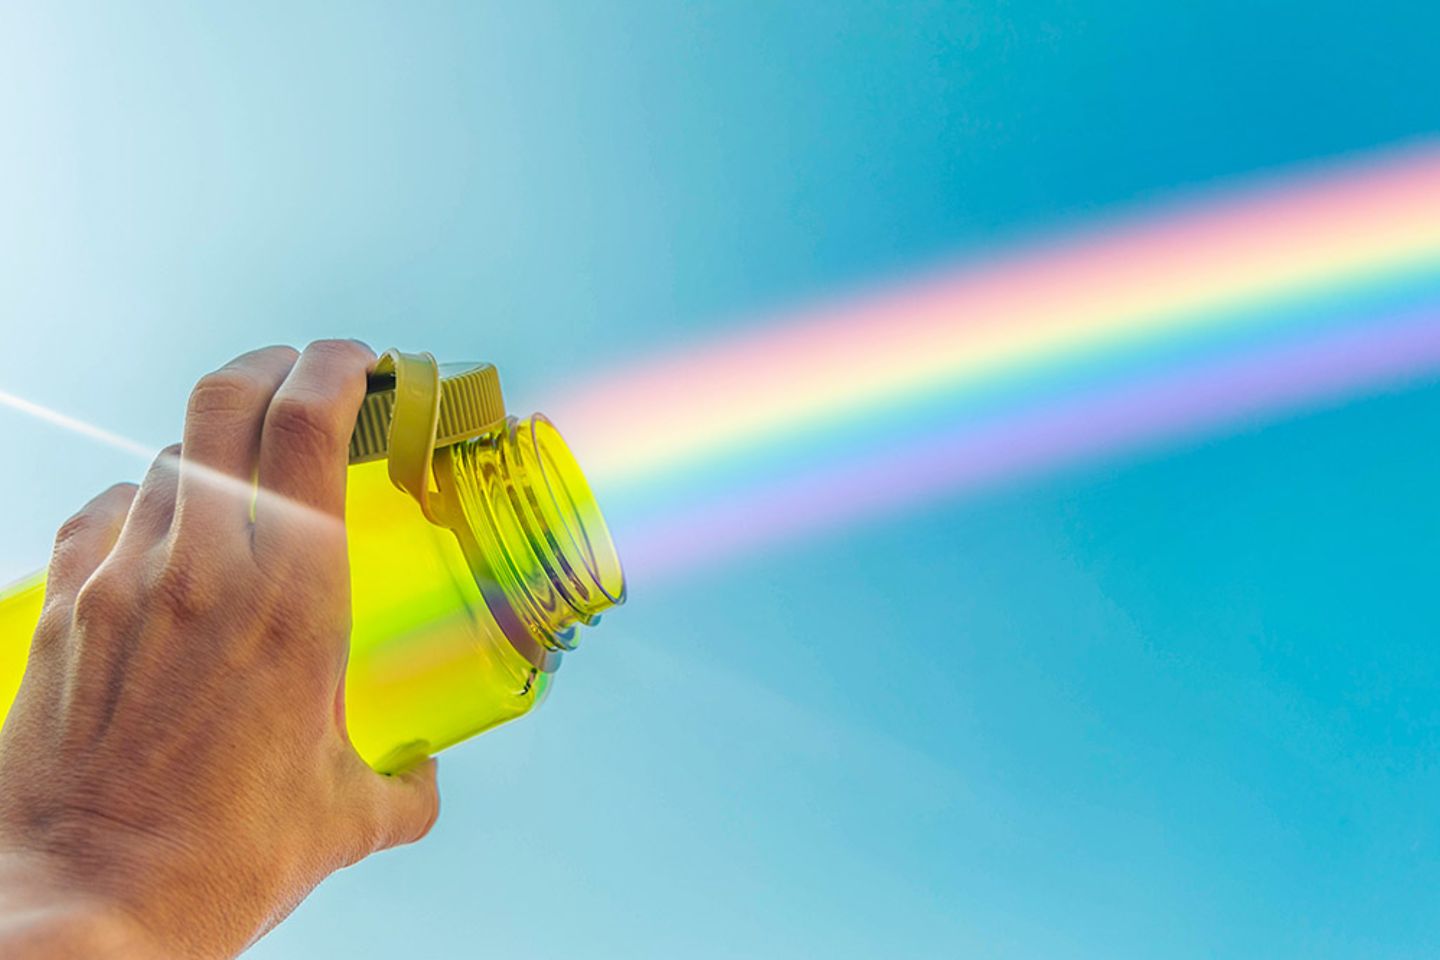 Rainbow in a bottle